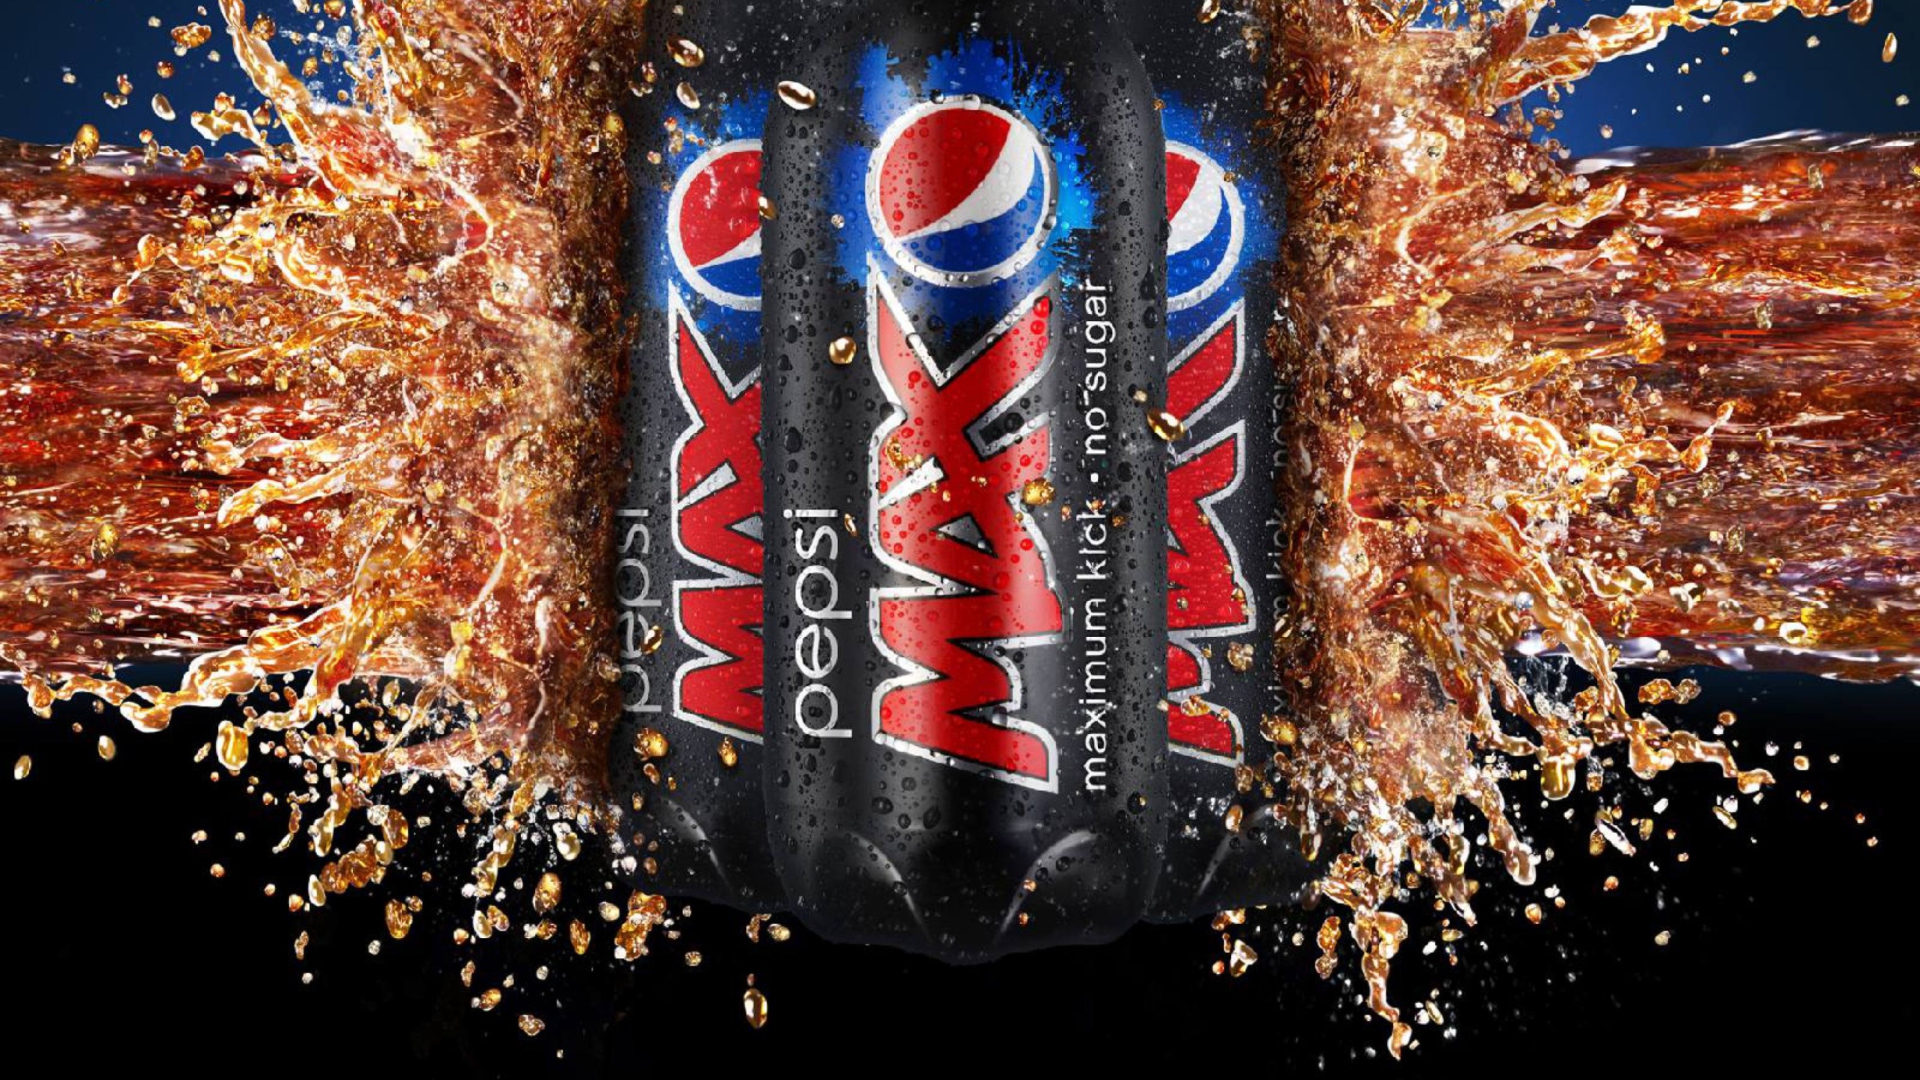 Обои Pepsi Max 1920x1080